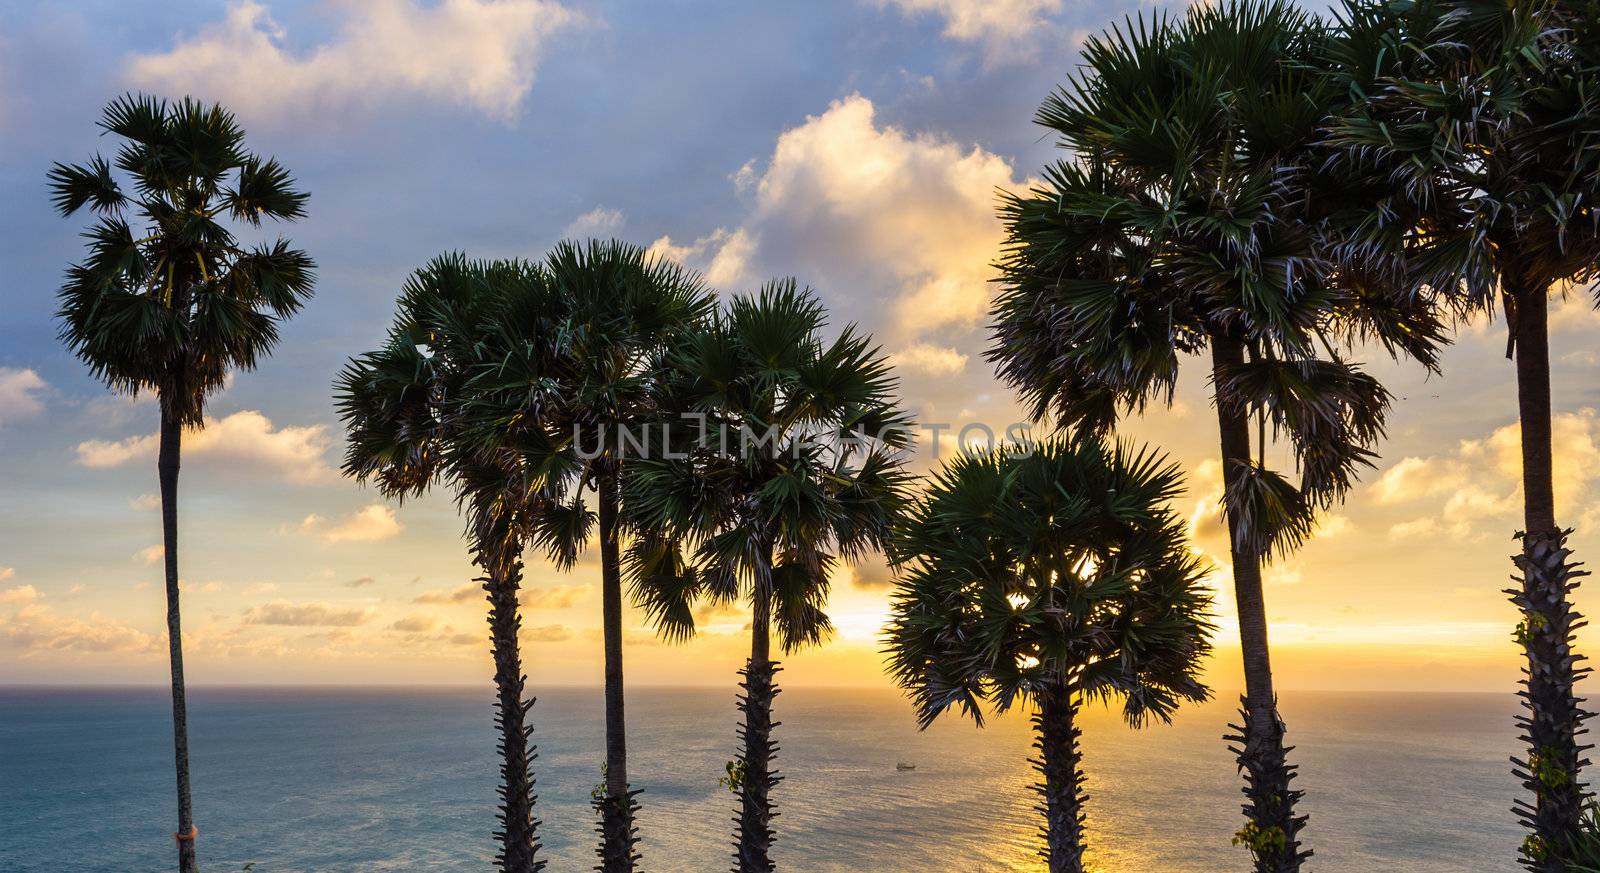 Set among palm trees on the island of Phuket